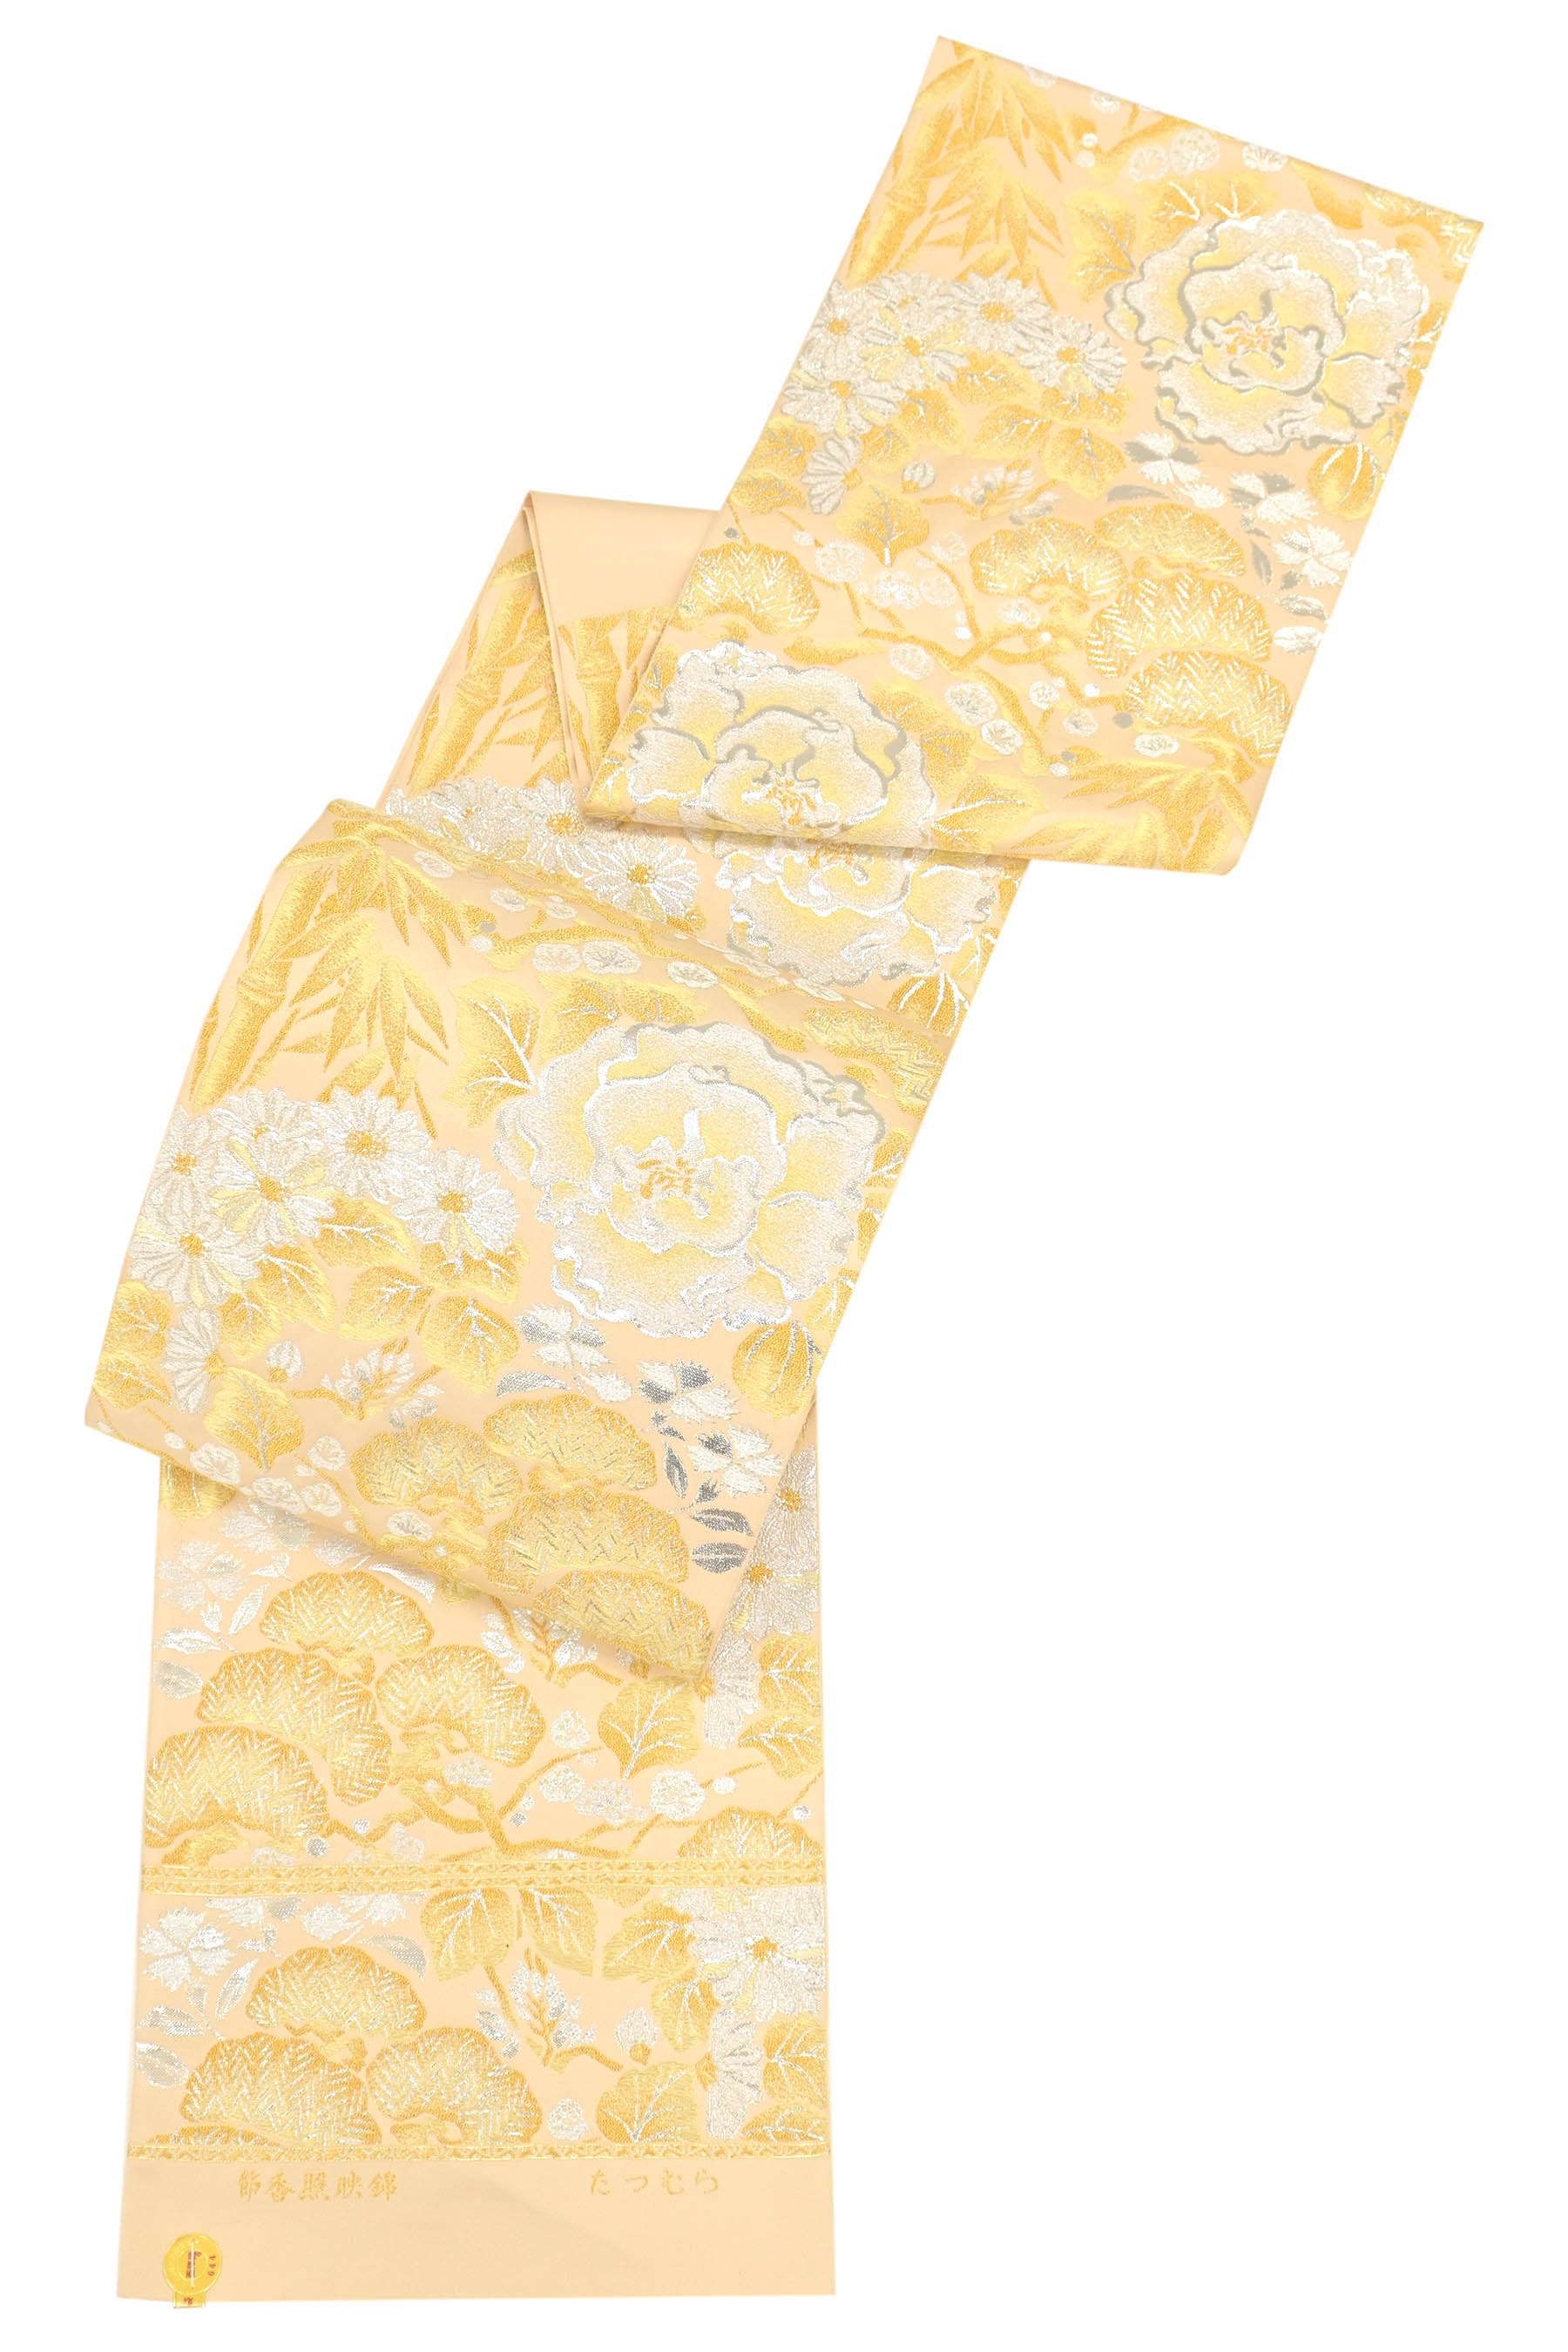 本袋帯【たつむら】龍村美術織物 対壽楽鳥 正絹 六通柄 橙色 金糸 振袖にも⭐︎